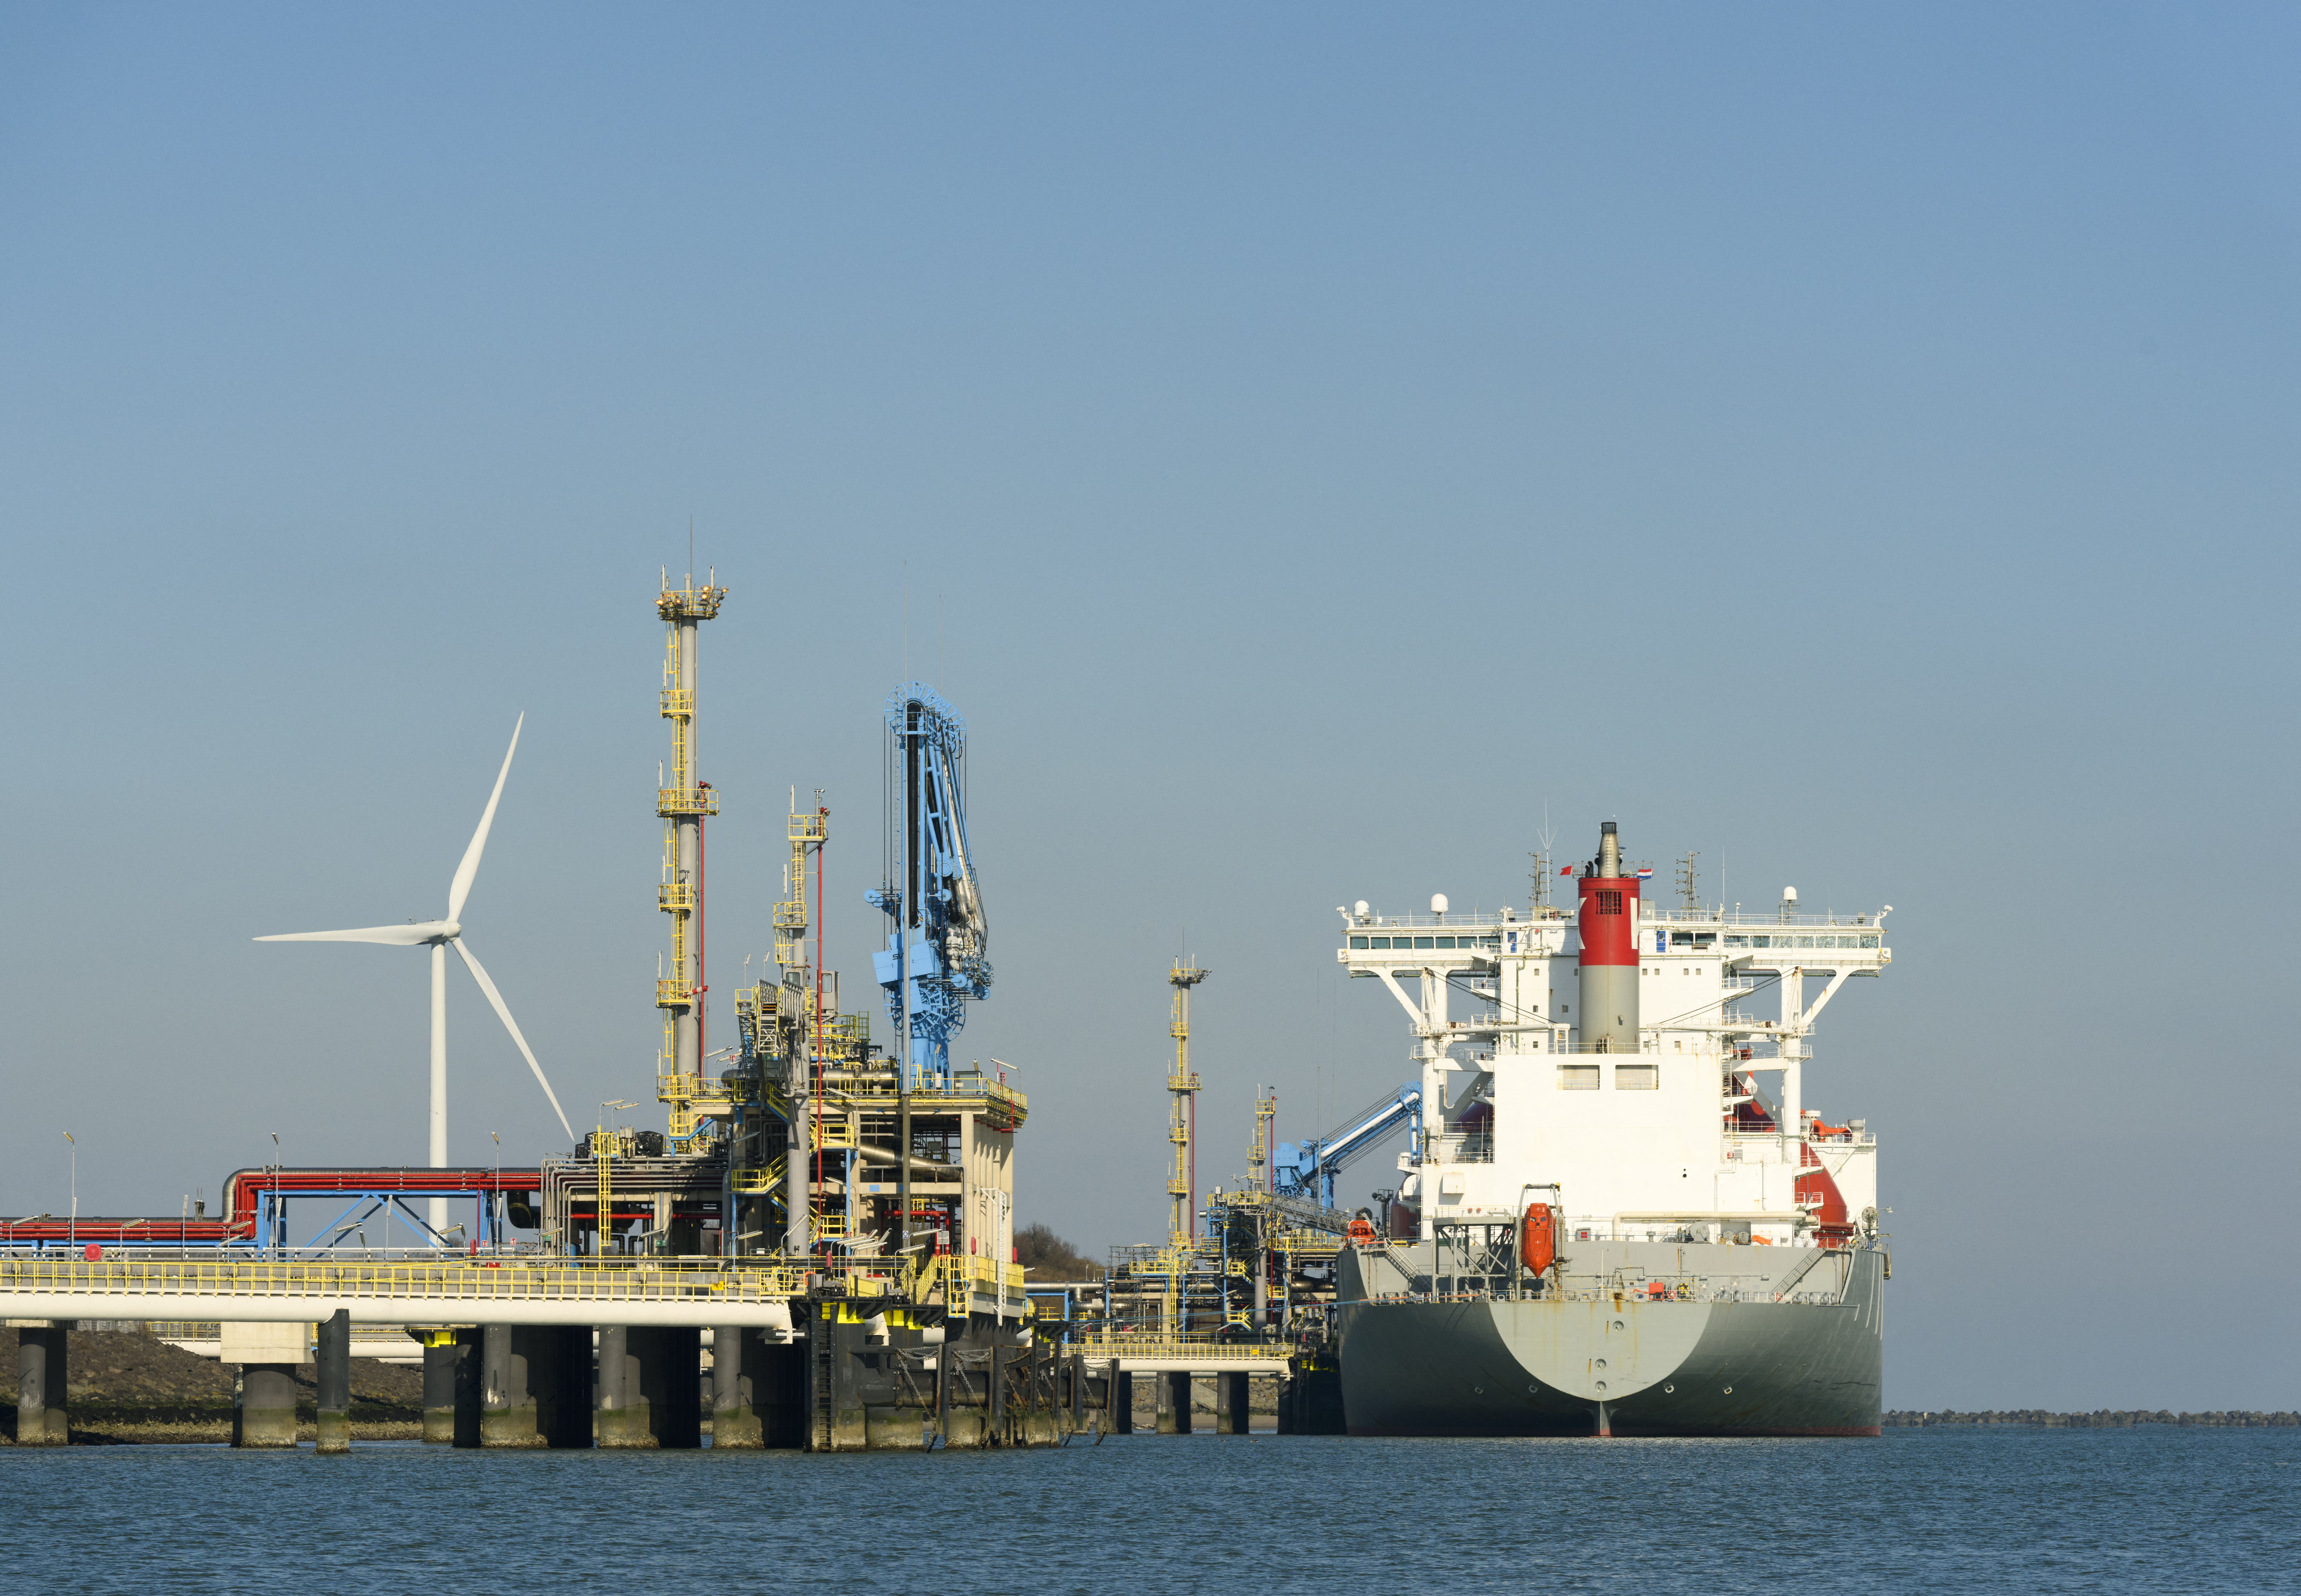 Hollandia és Németország egy új gázmező feltárását tervezi az Északi-tengeren